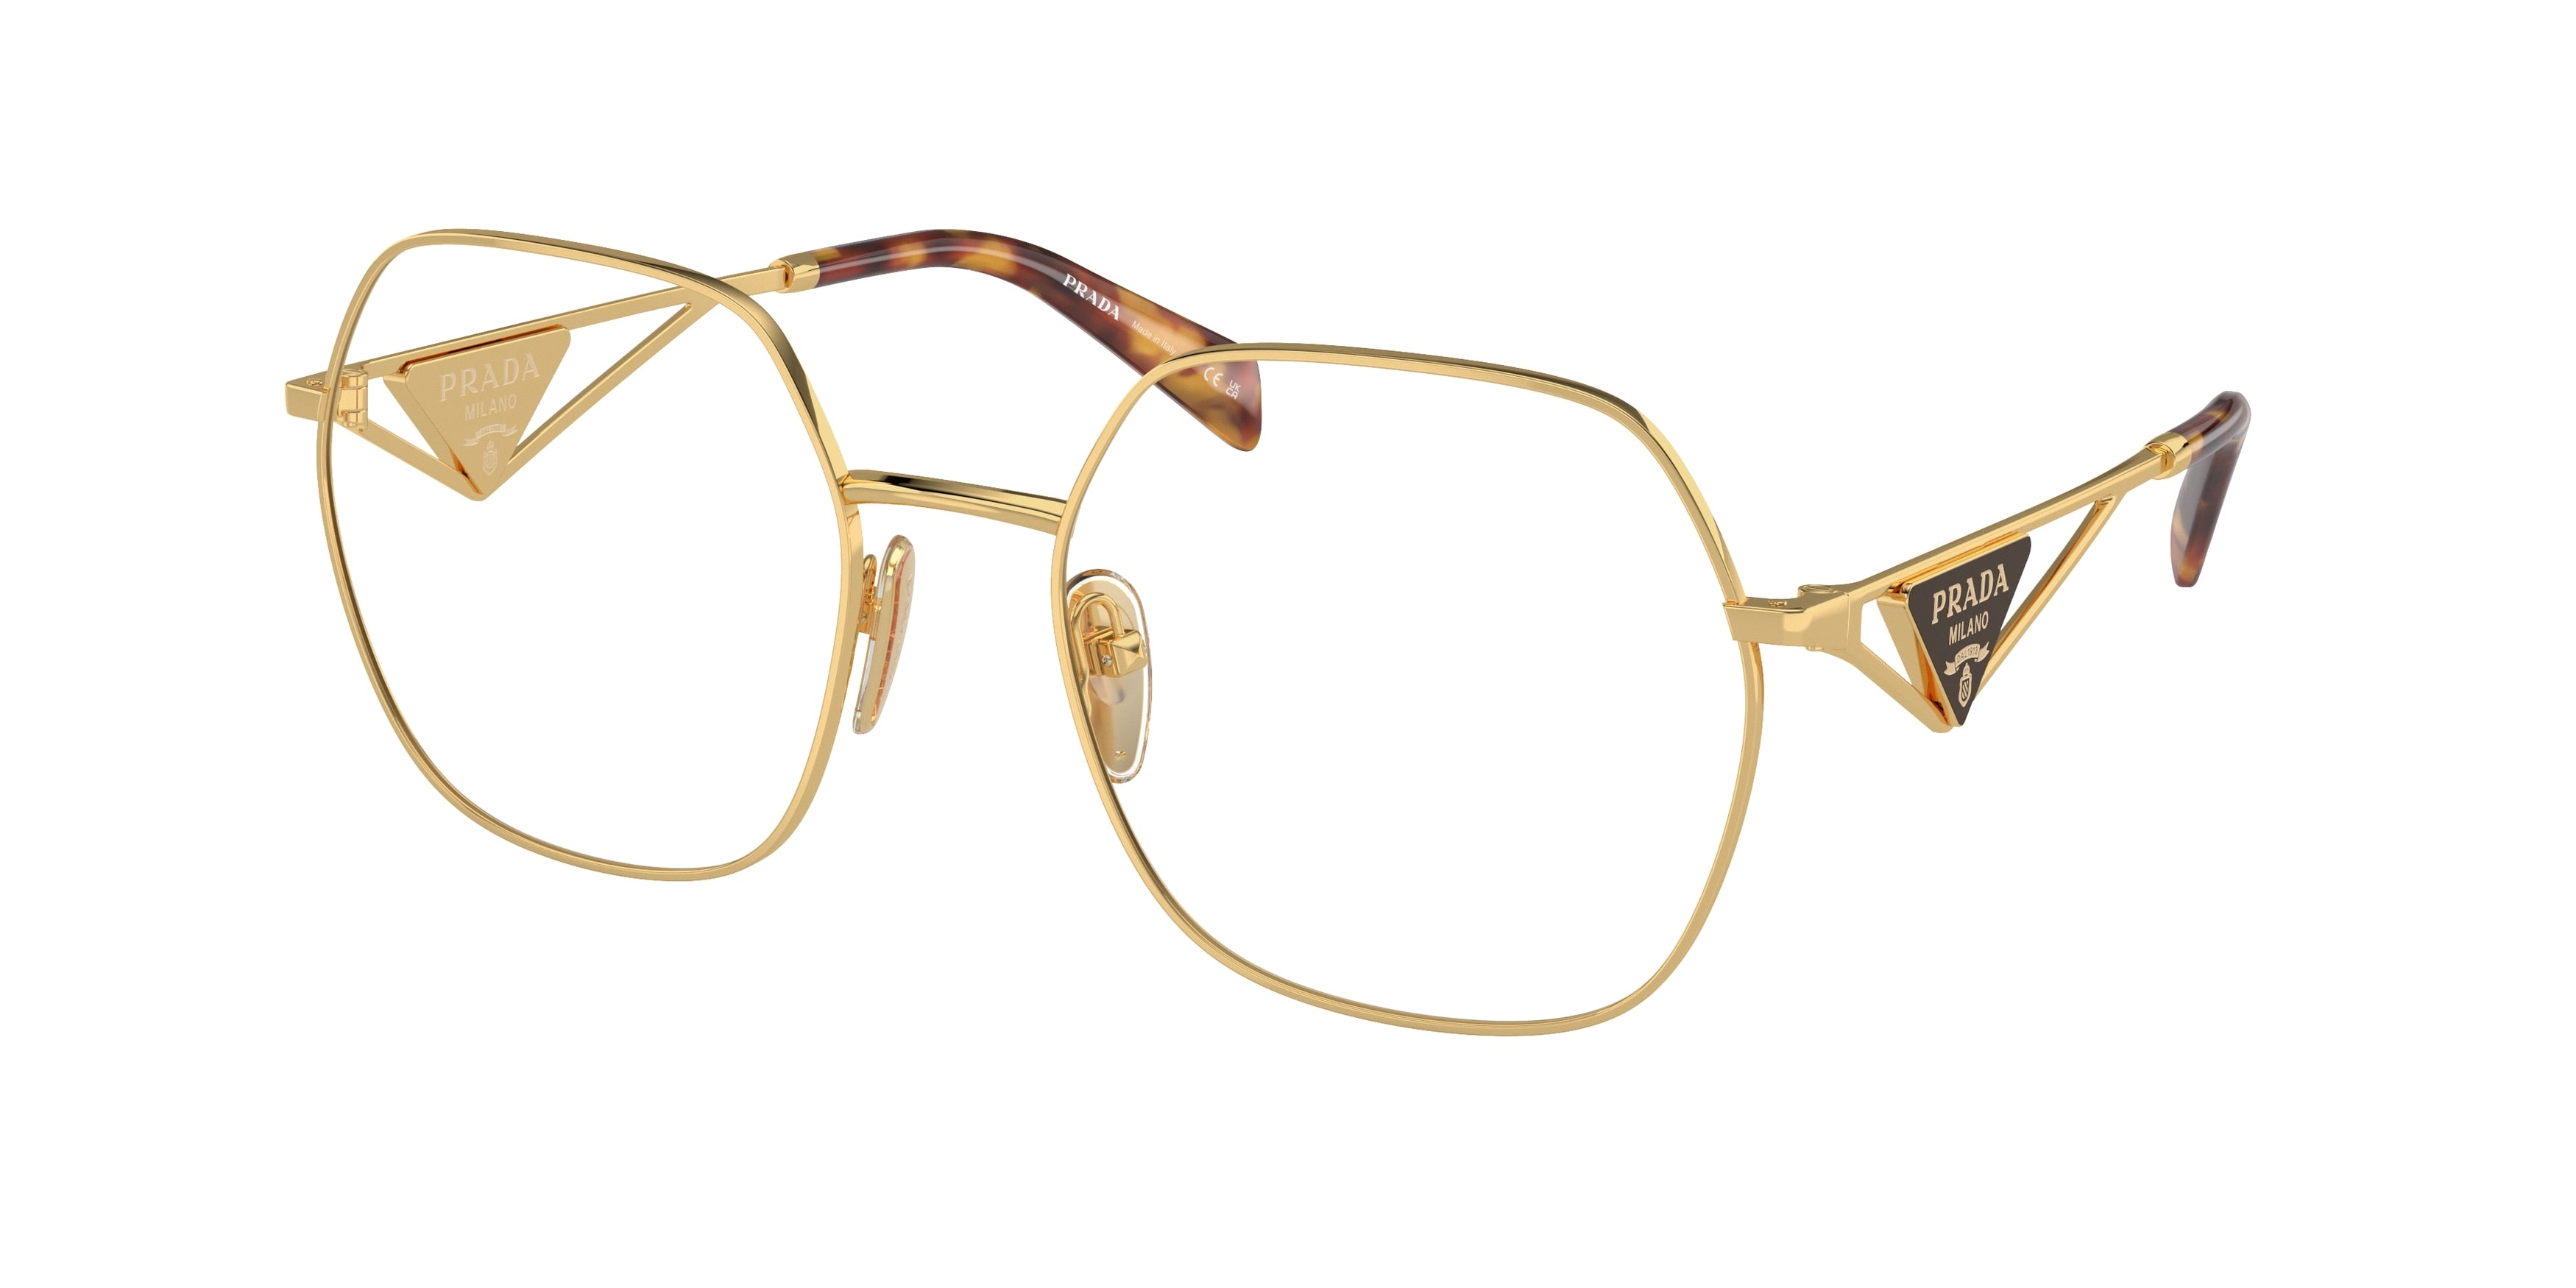 Prada PR59ZV Irregular Eyeglasses  5AK1O1-Gold 56-140-19 - Color Map Gold